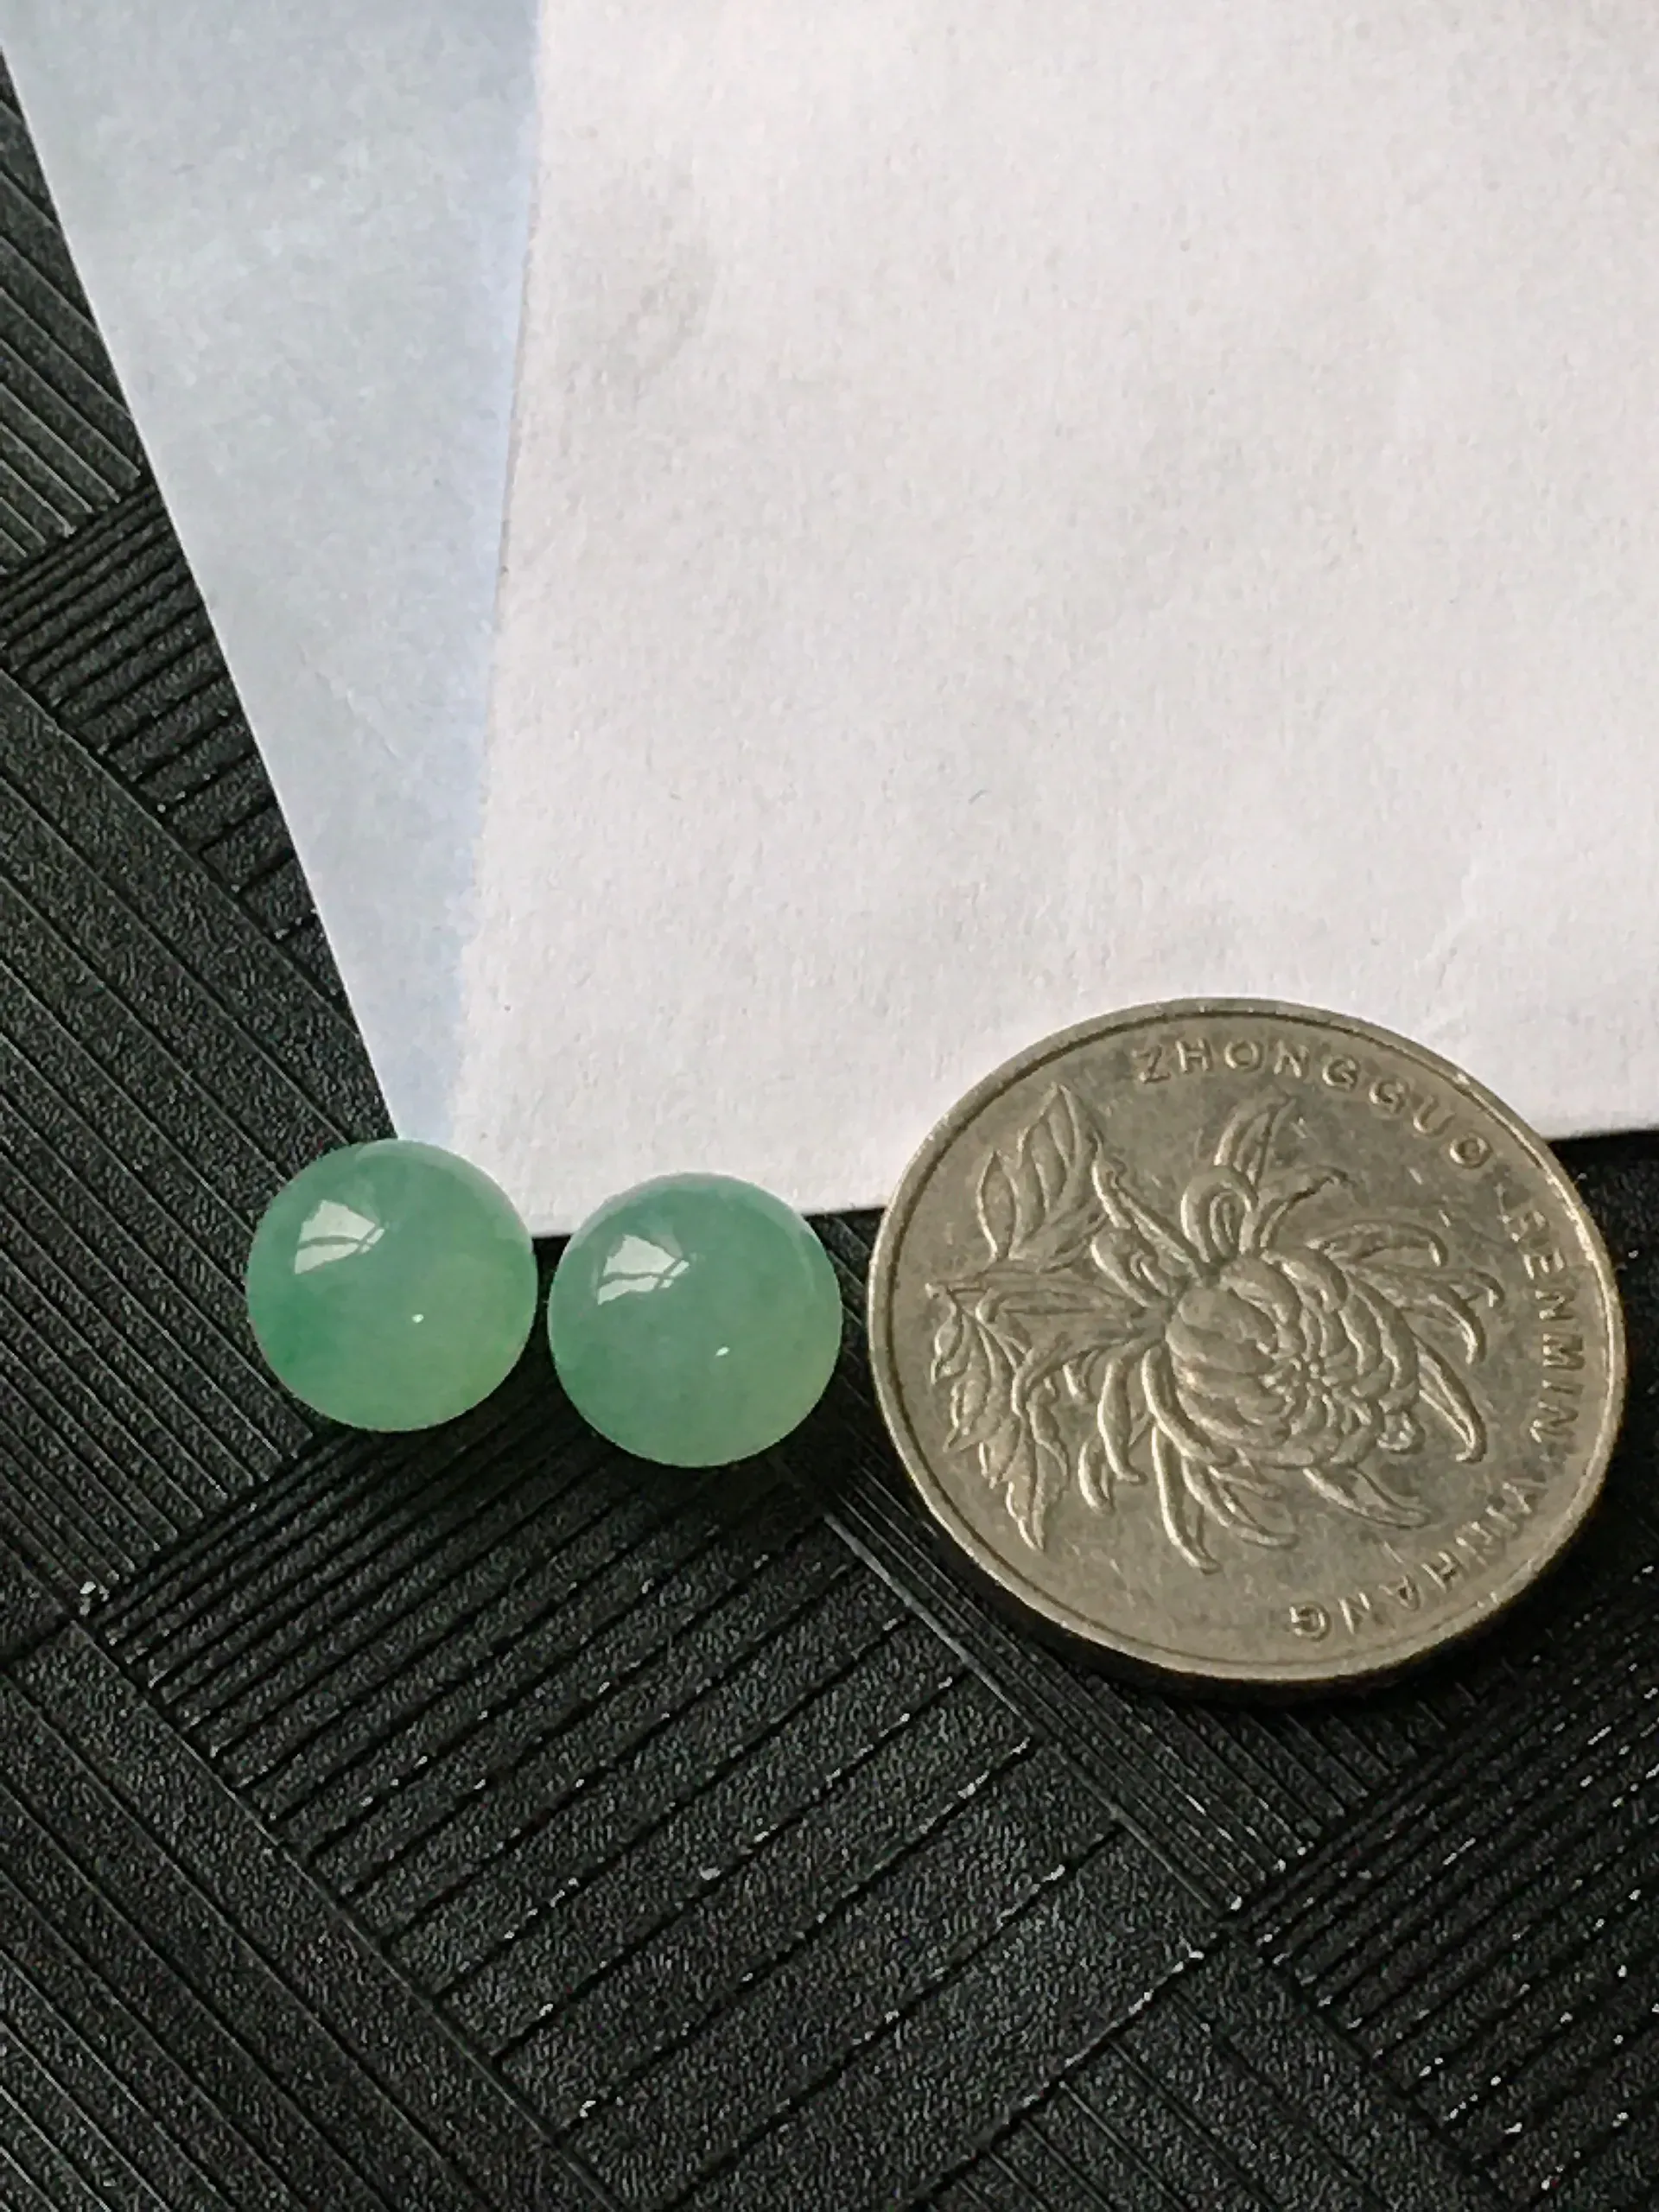 翡翠冰润满绿圆珠裸石一对，种水好玉质细腻温润，颜色漂亮。尺寸：9.2mm/9.3mm